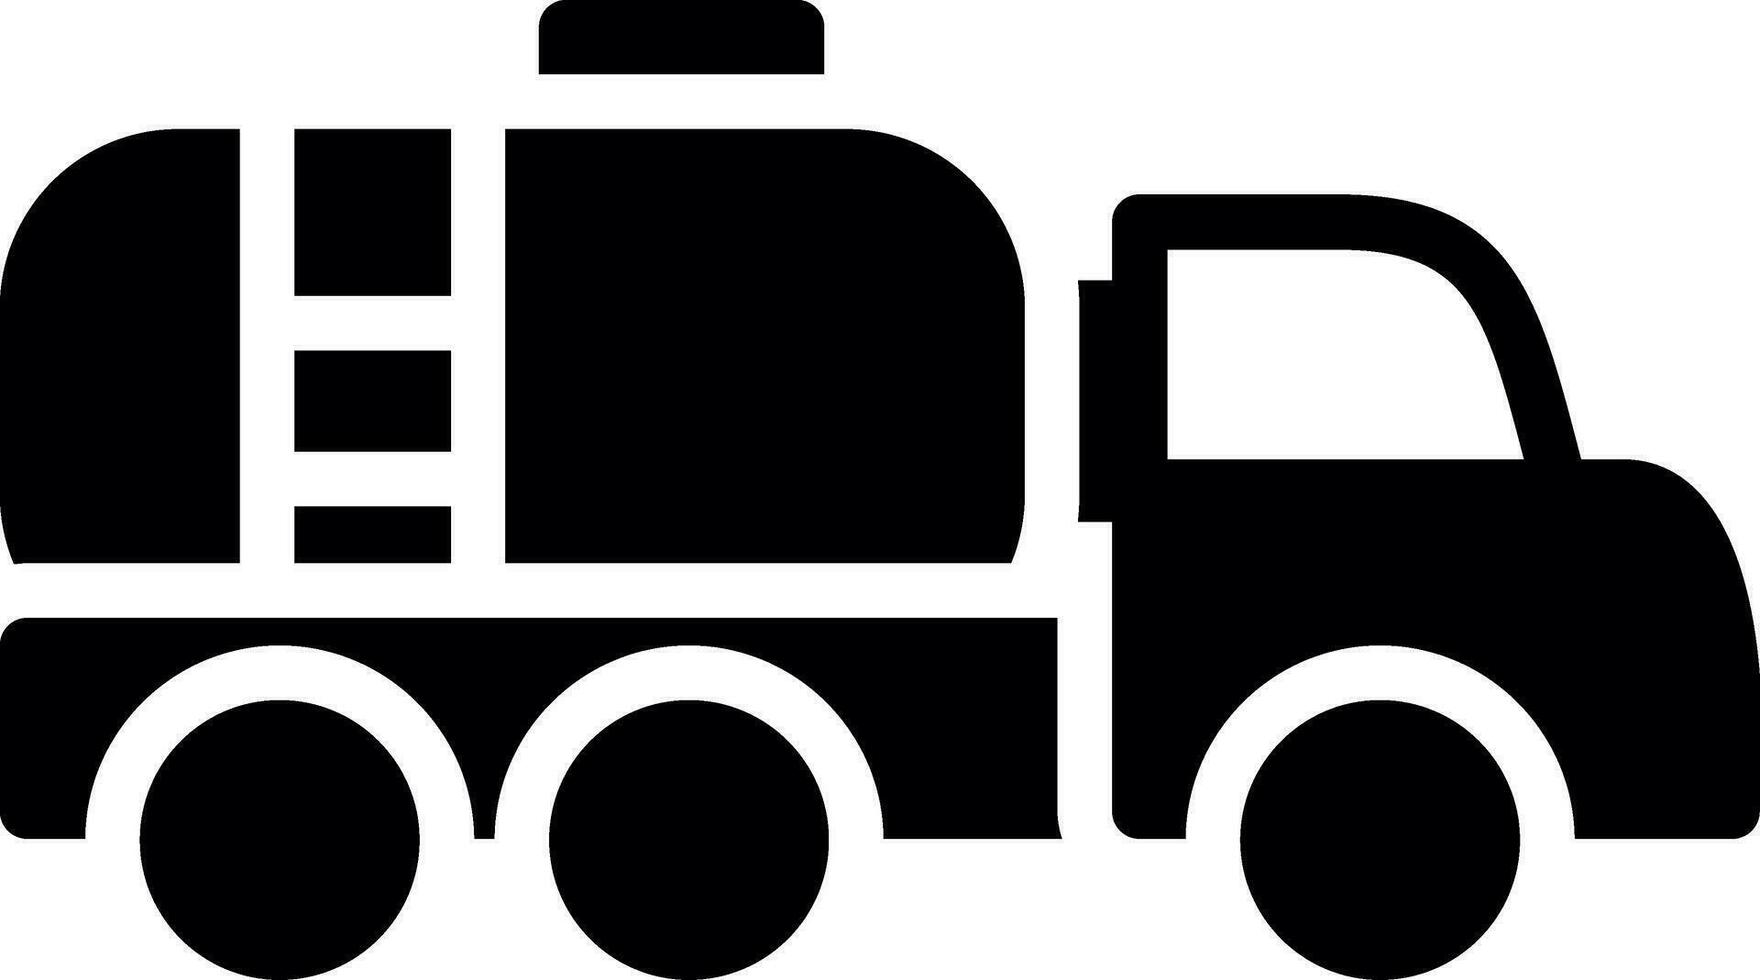 Tanker Truck Creative Icon Design vector